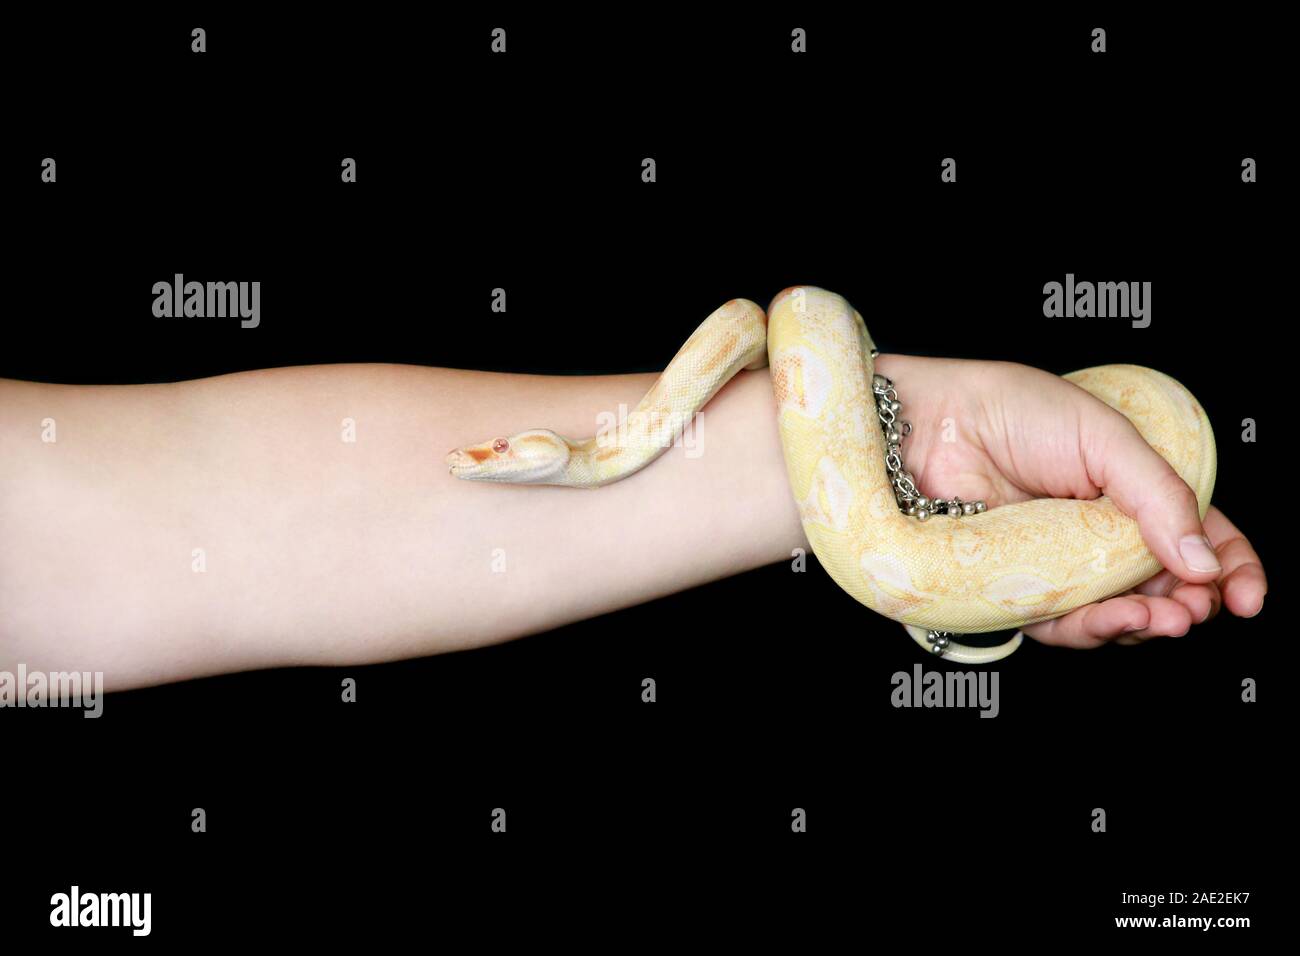 Weibliche Hände mit Schlange. Frau hält Boa constrictor albino Schlange in der Hand mit Schmuck. Exotischen tropischen kaltblütige Reptilien Tier, Boa Constrictor. Stockfoto